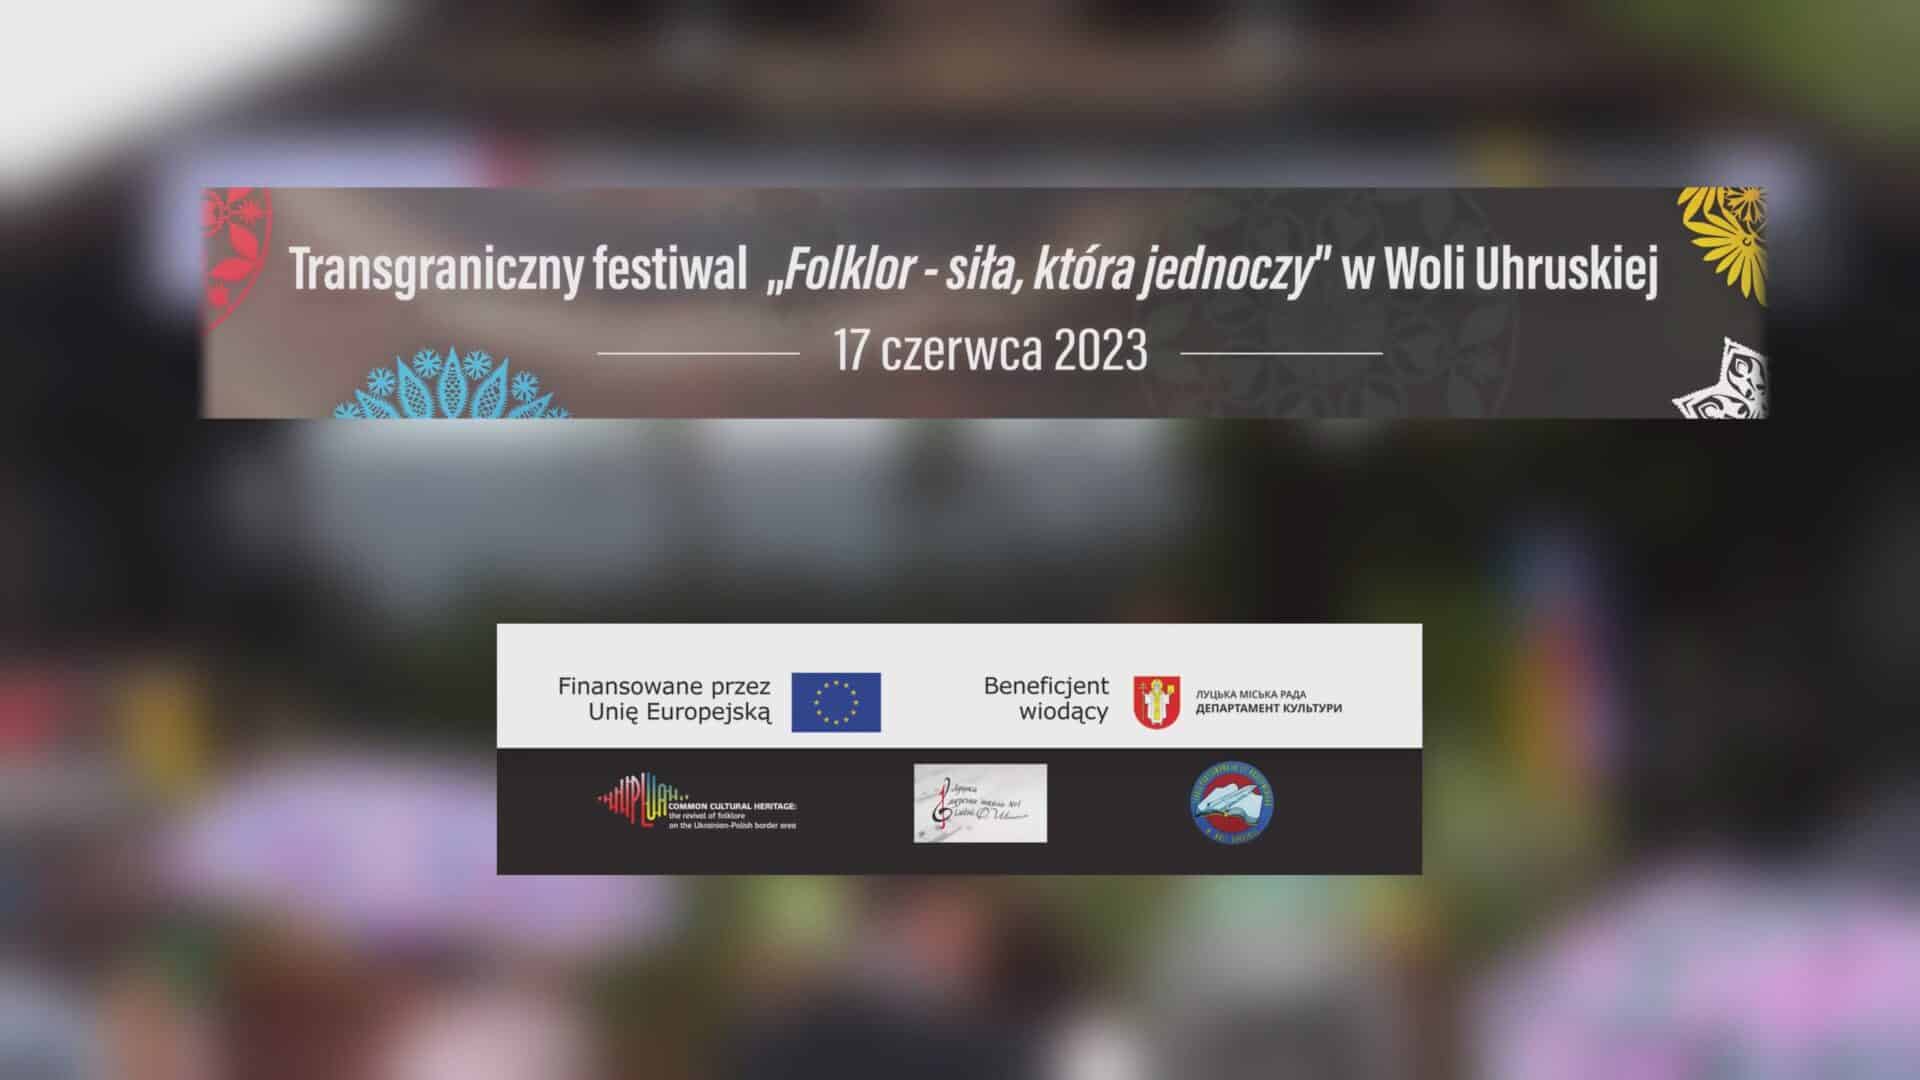 Transgraniczny festiwal “Folklor – siła, która jednoczy” 17.06.2023